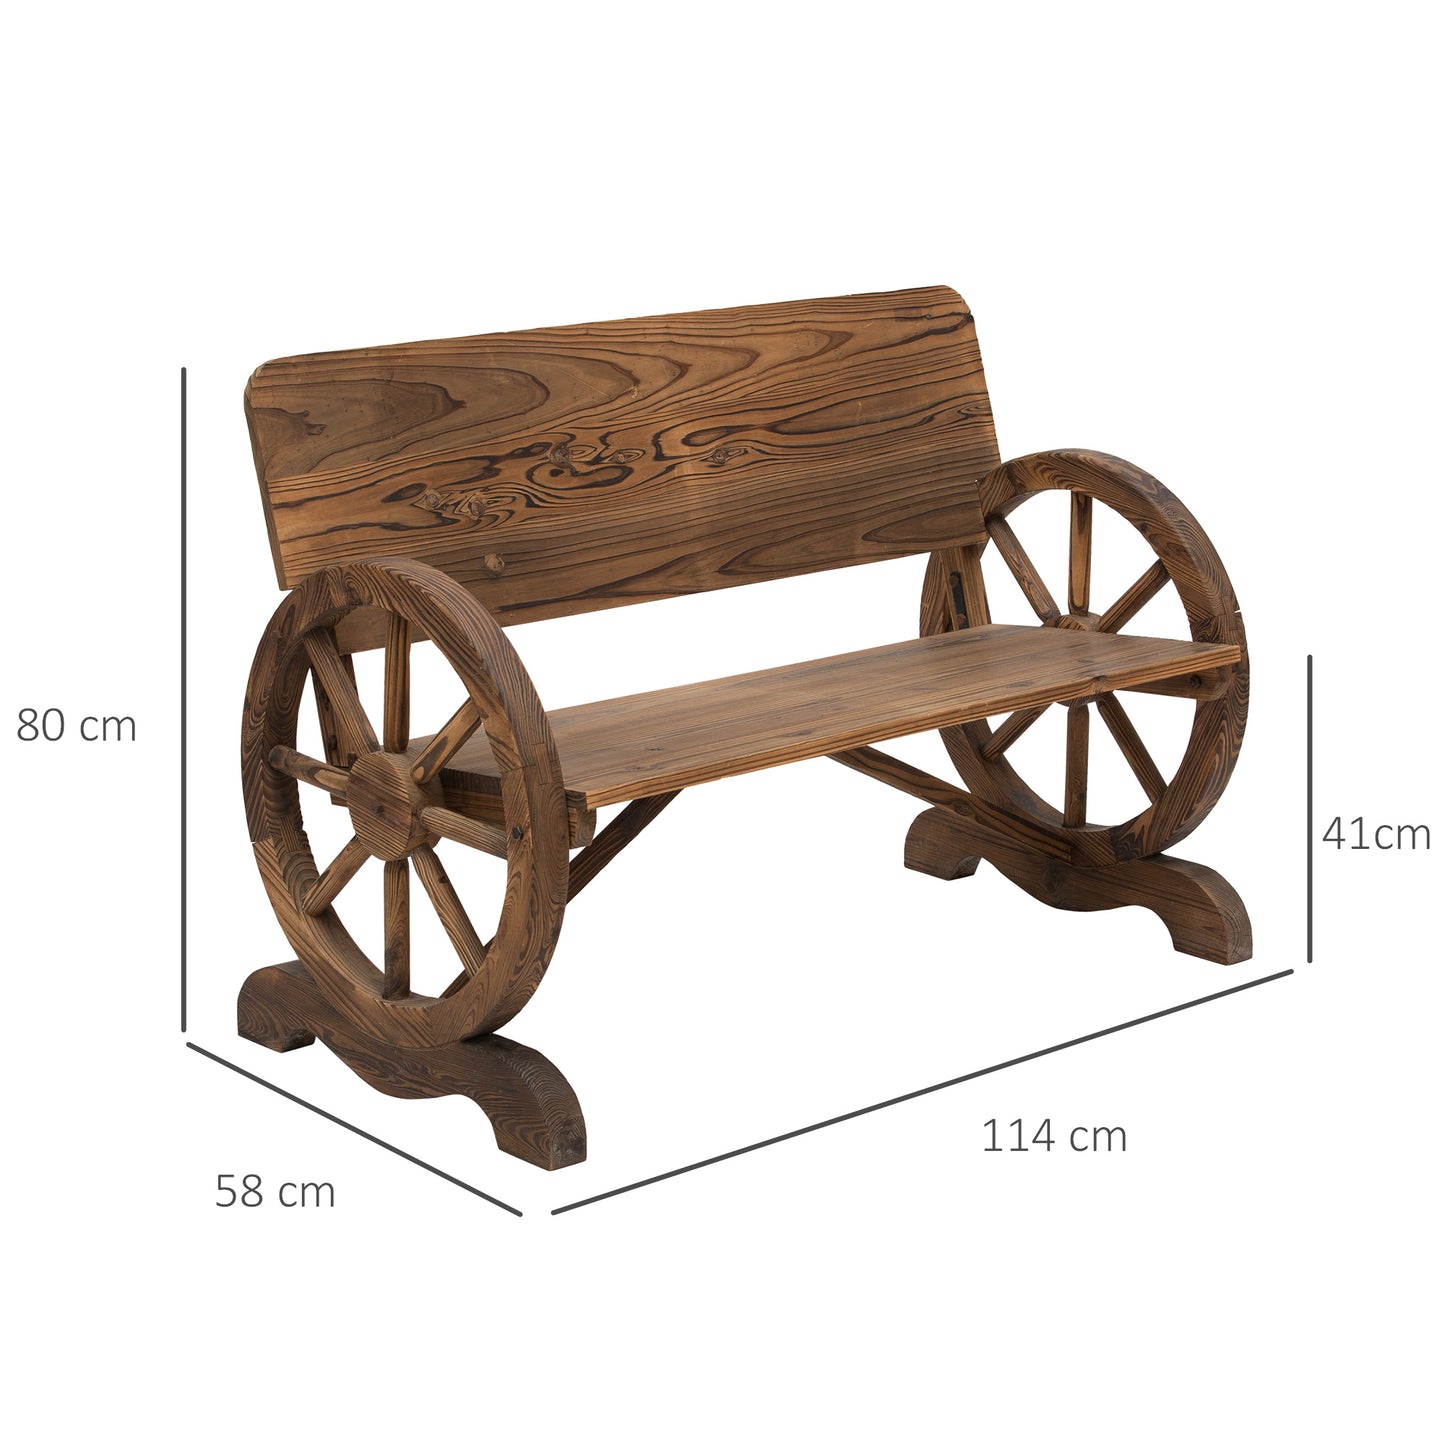 Outsunny Fir Wood 2-Seater Outdoor Garden Wagon Wheel Bench